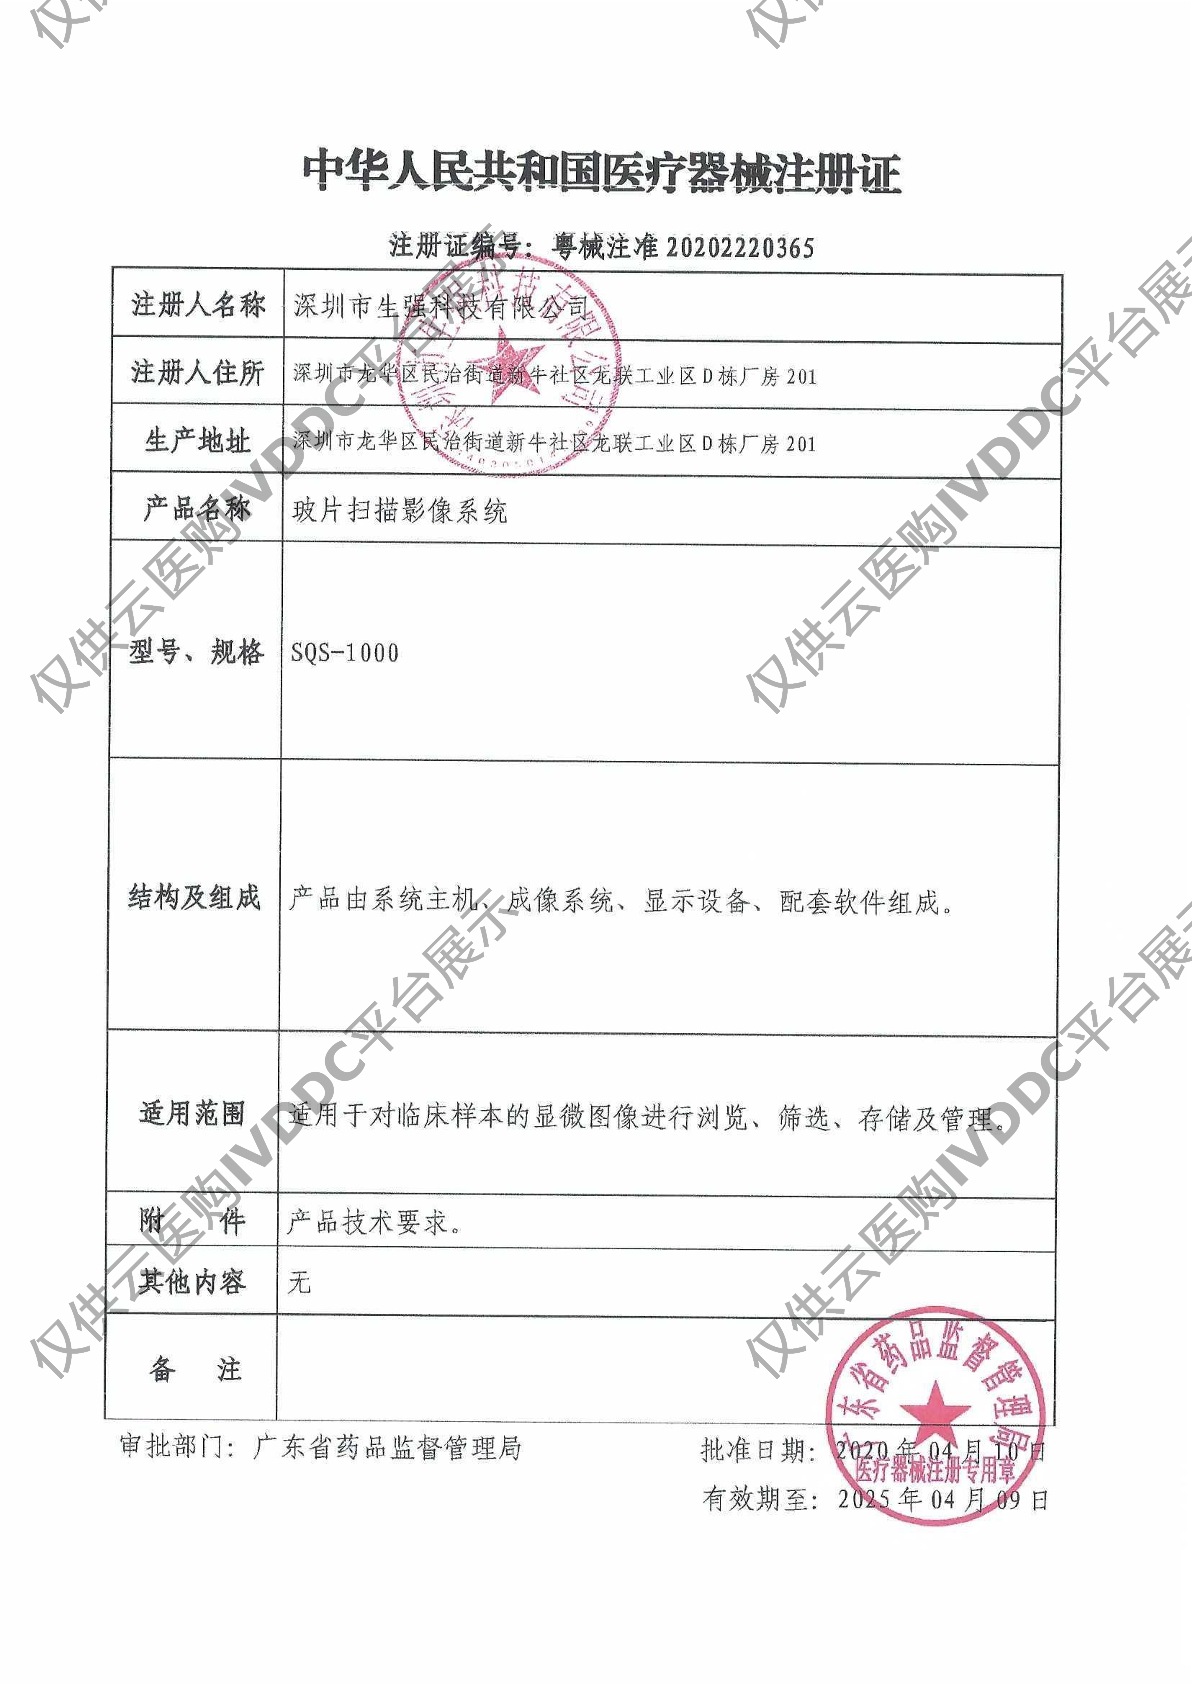 【生强】玻片扫描影像系统SQSL-510注册证